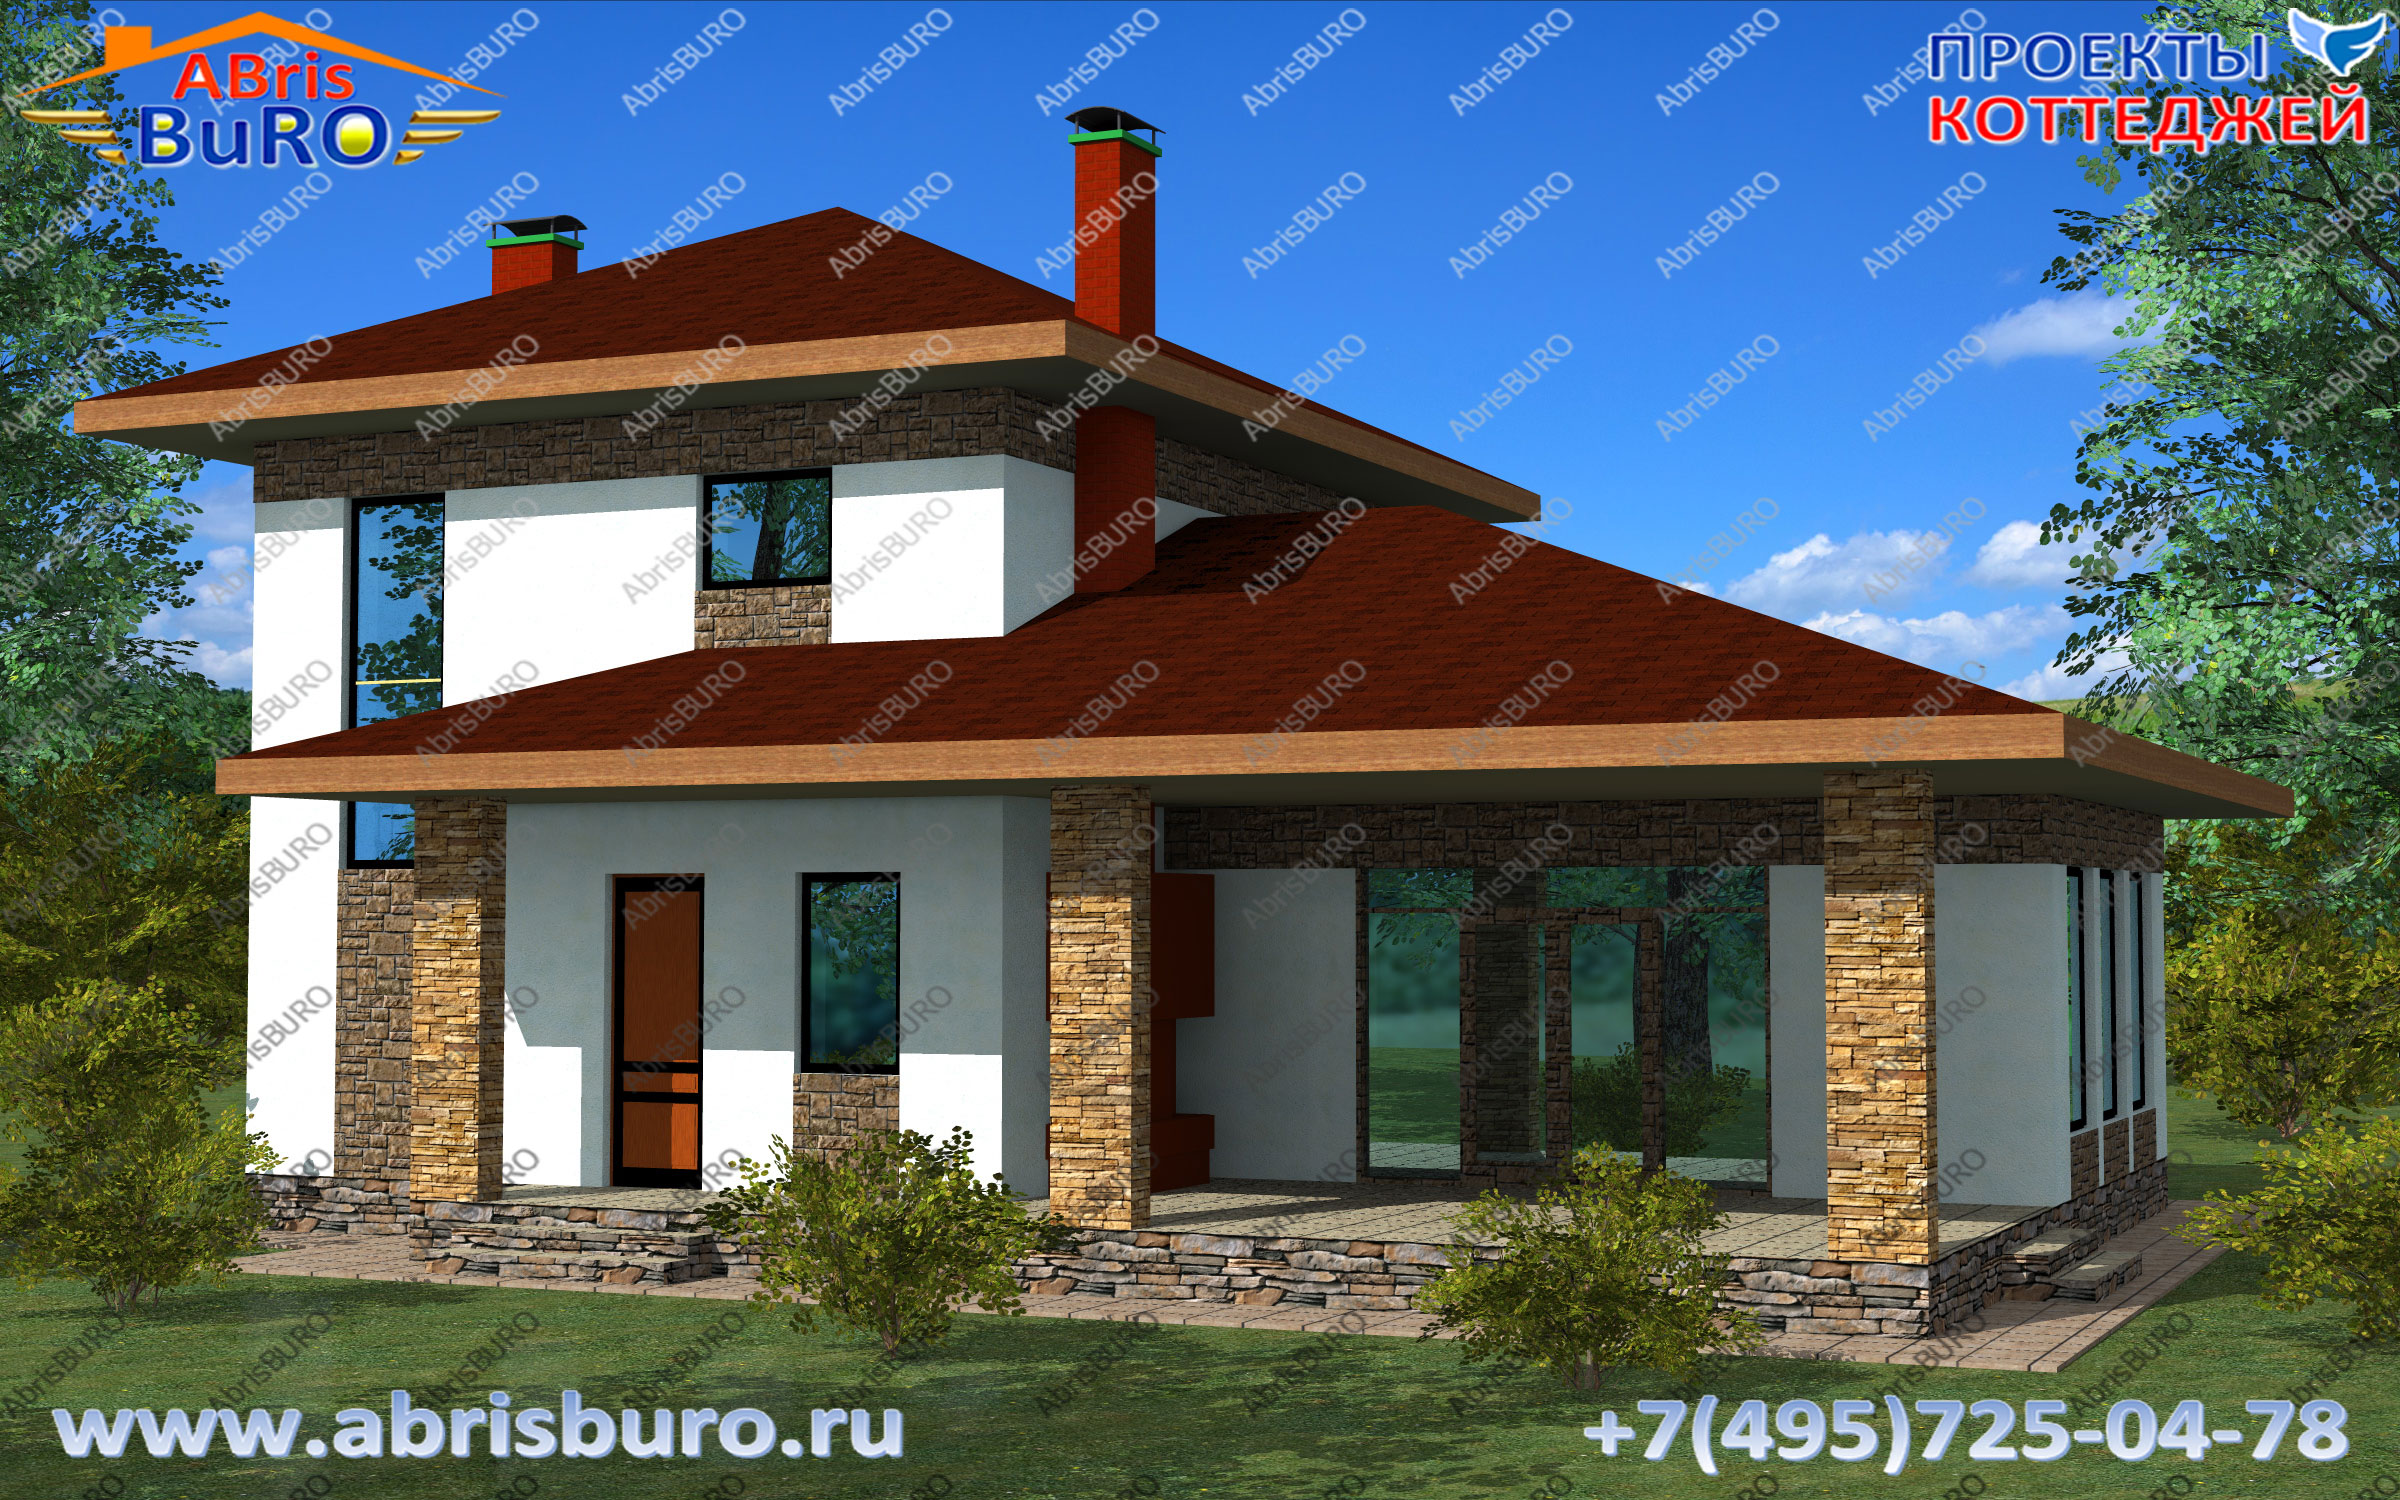 Проекты домов и коттеджей с бассейном на сайте www.abrisburo.ru. 